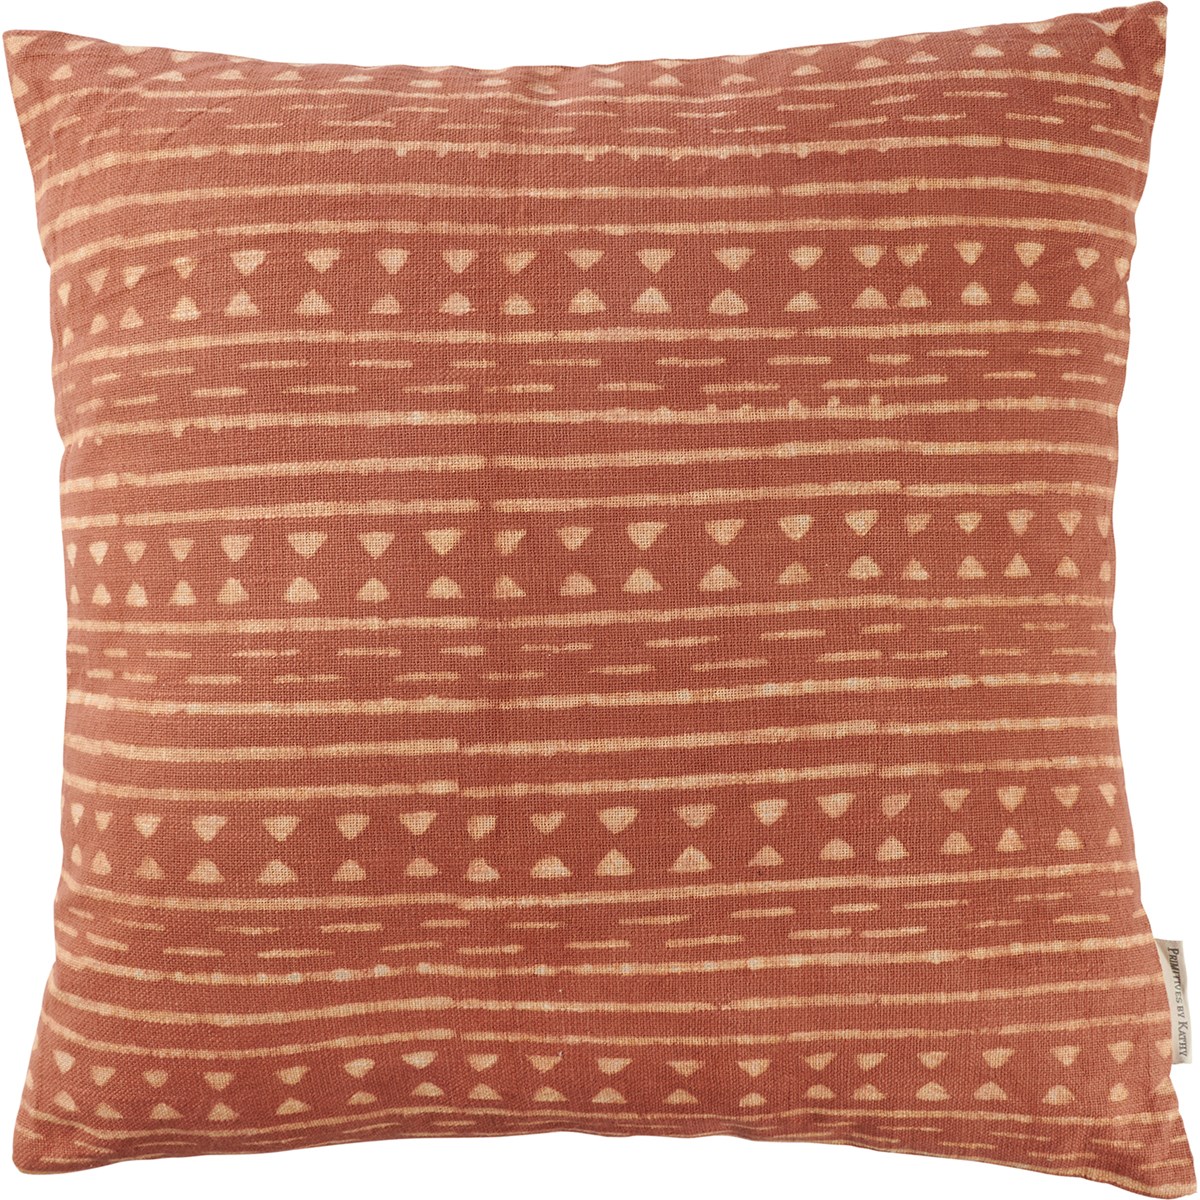 Sienna Tribal Pillow - Cotton, Zipper